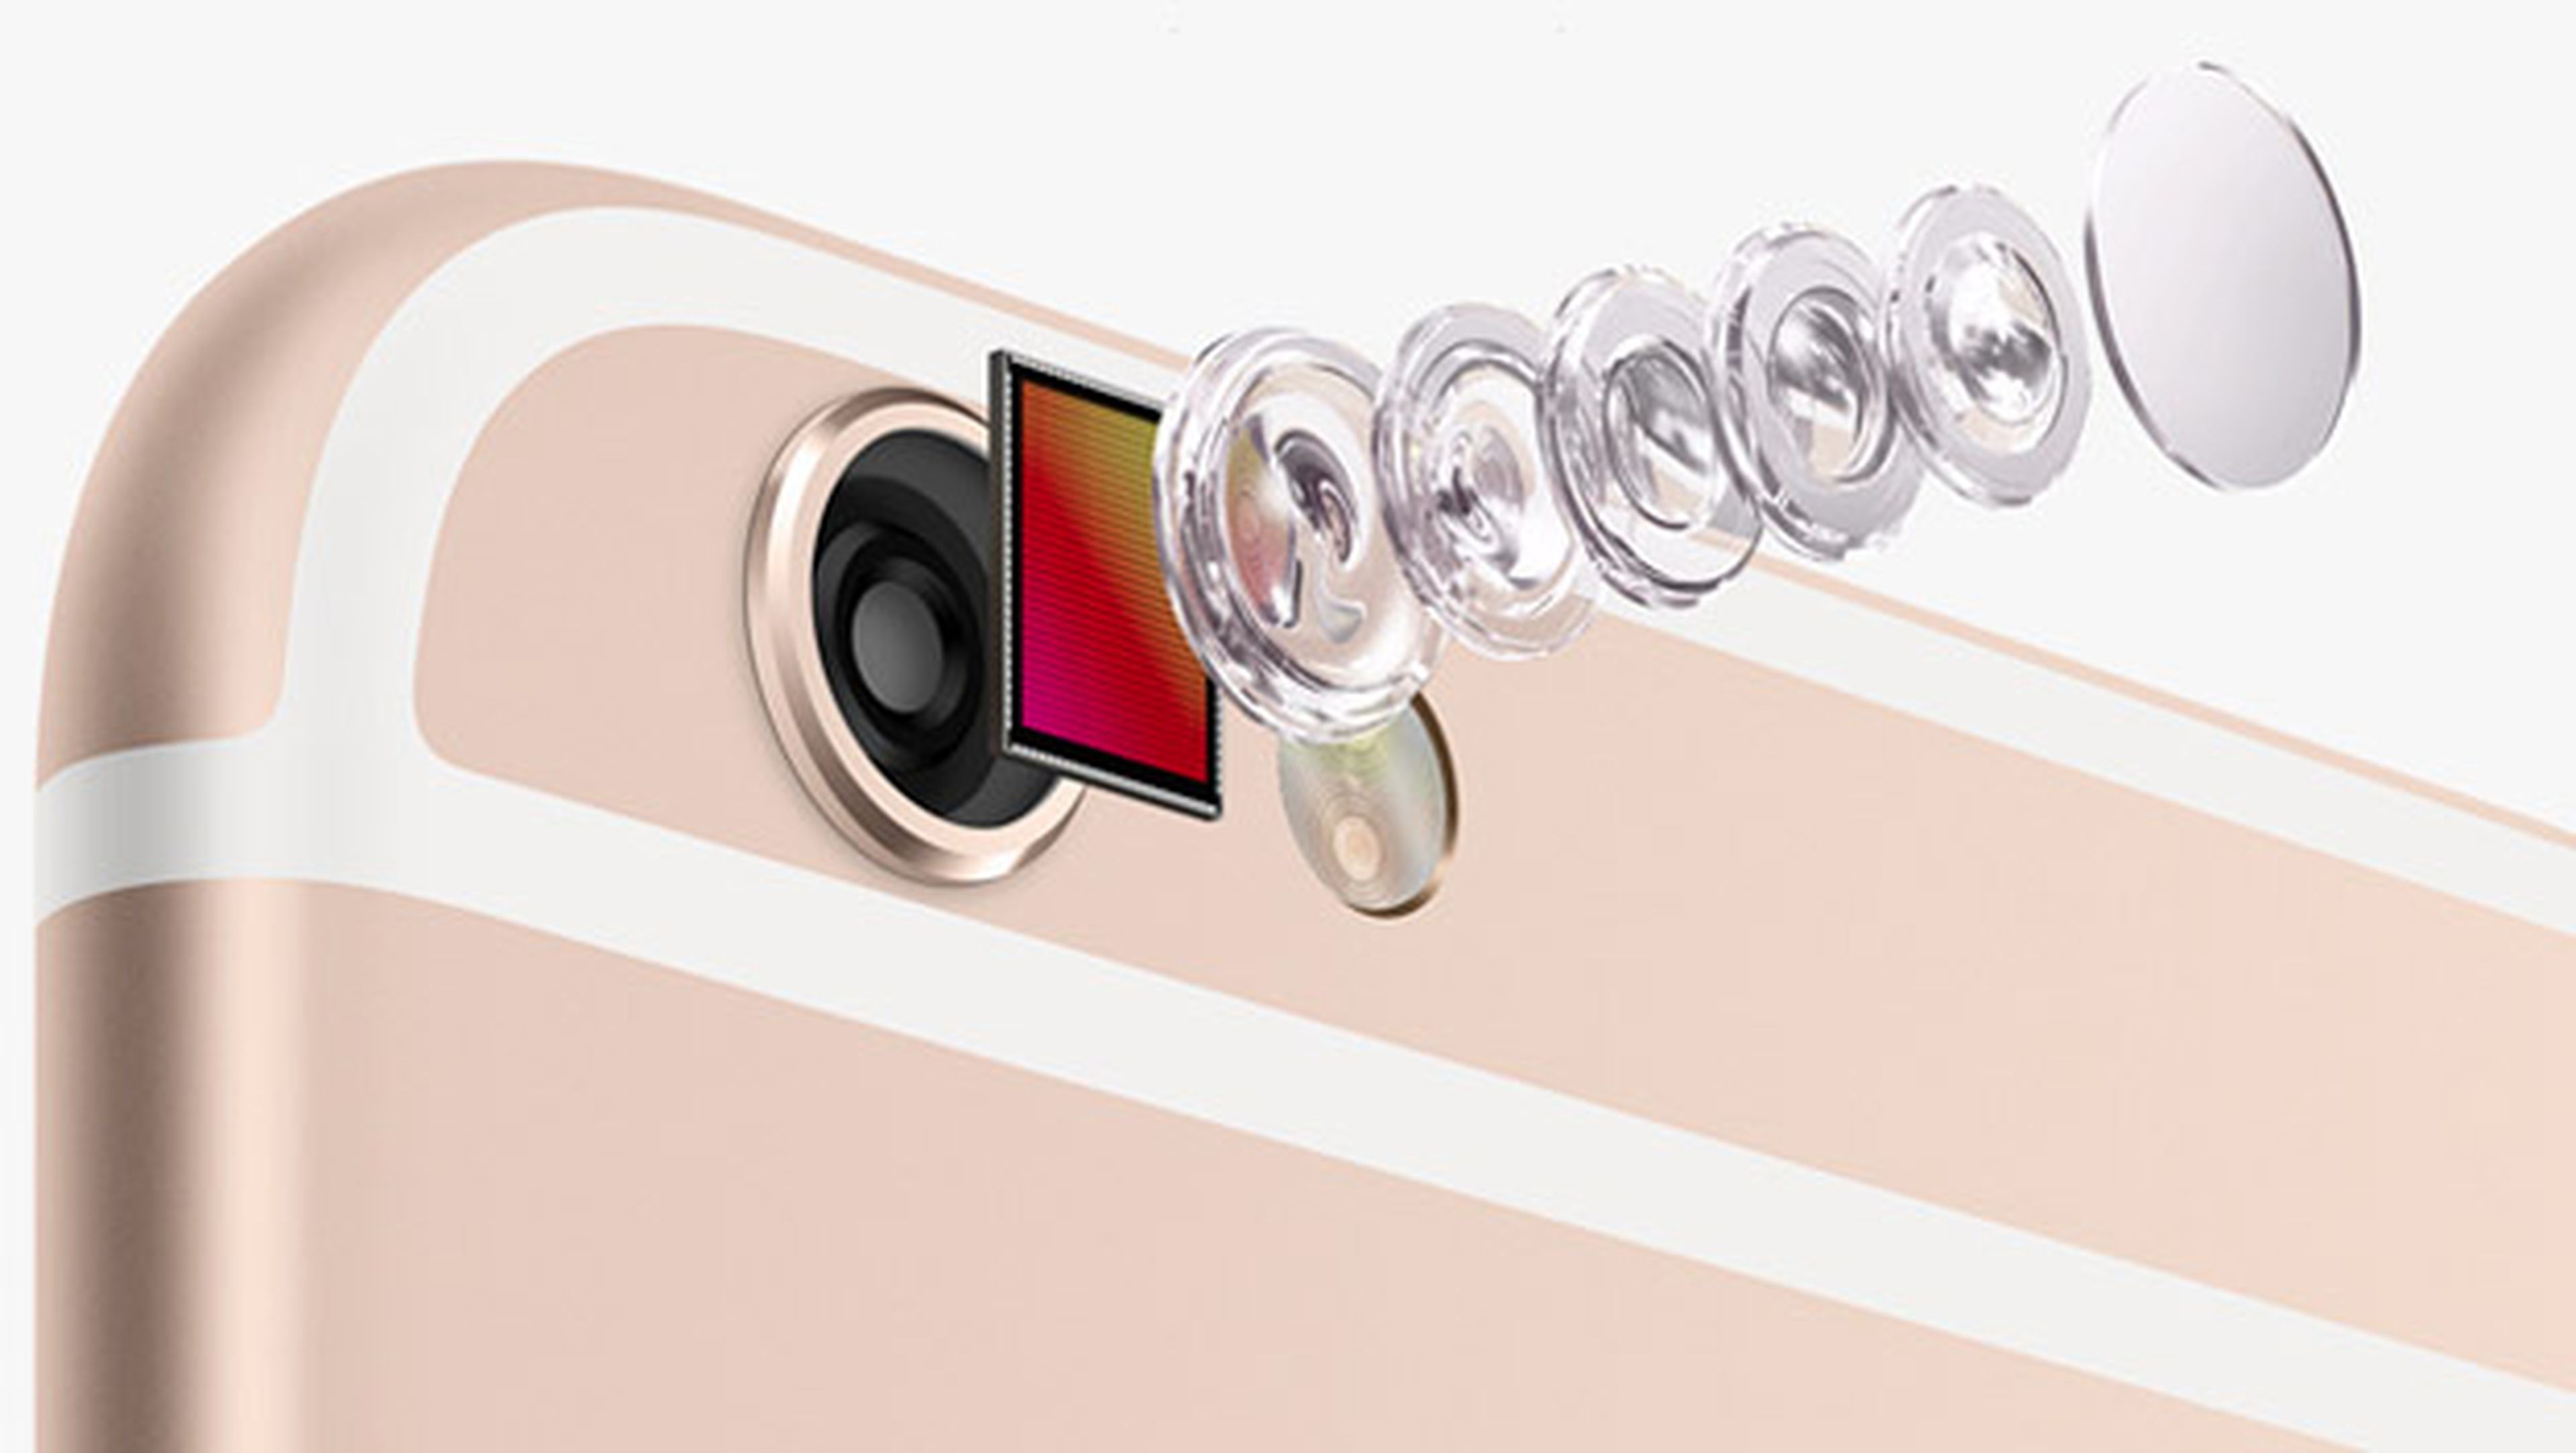 iPhone 6S tendría cámara 12 megapíxeles